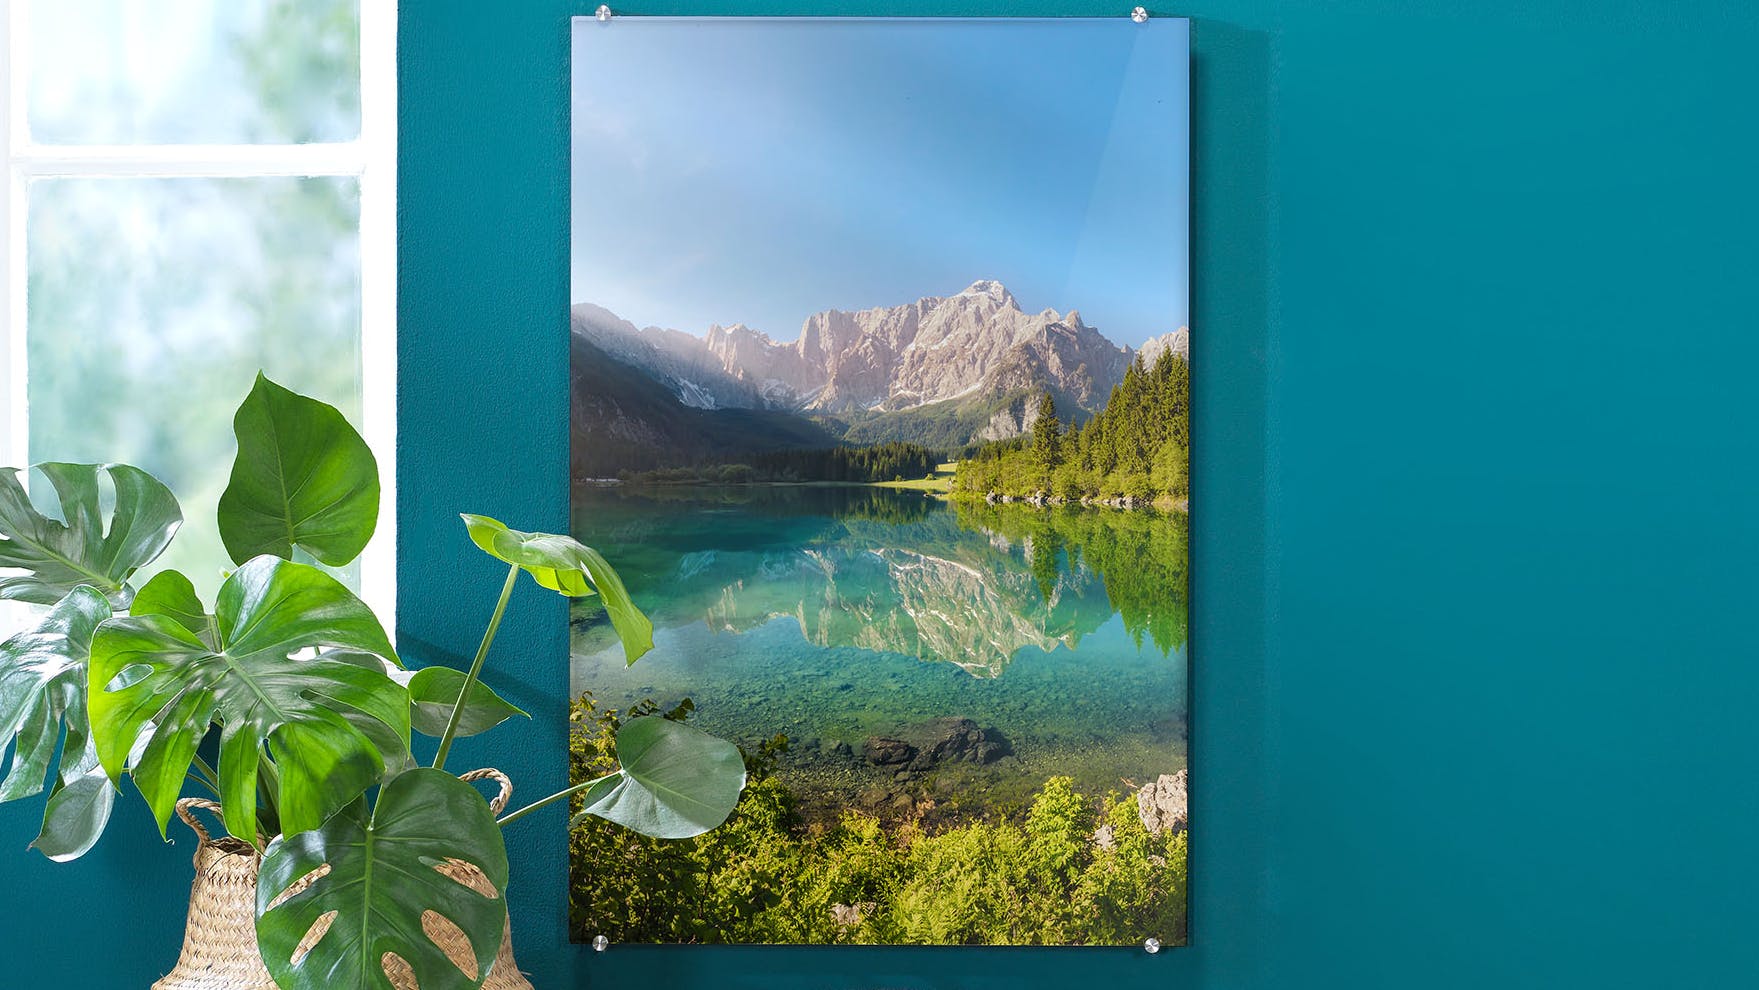 Foto achter acrylglas in staand formaat met een foto van een landschap